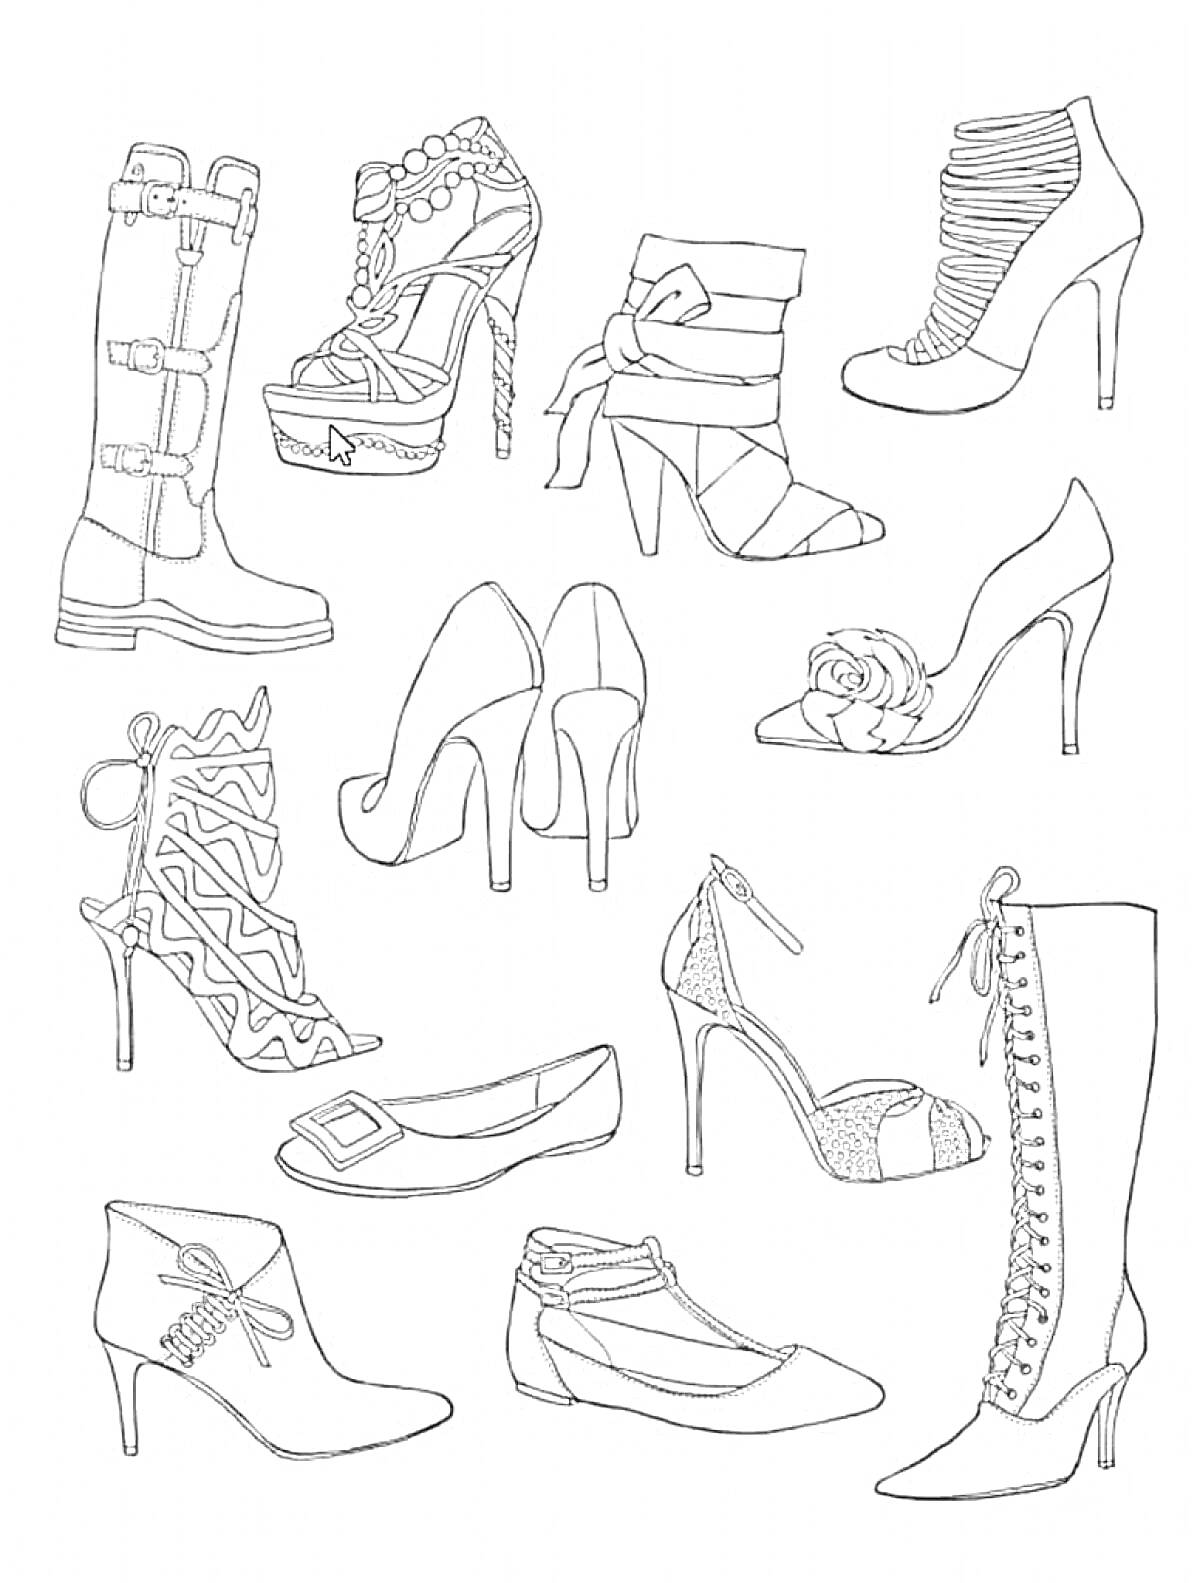 Раскраска Разнообразные туфли для девочек: высокие ботинки на шнуровке, босоножки с цветами и орнаментом, туфли на ремешке, туфли на каблуке с лентами и сандалии на плоской подошве